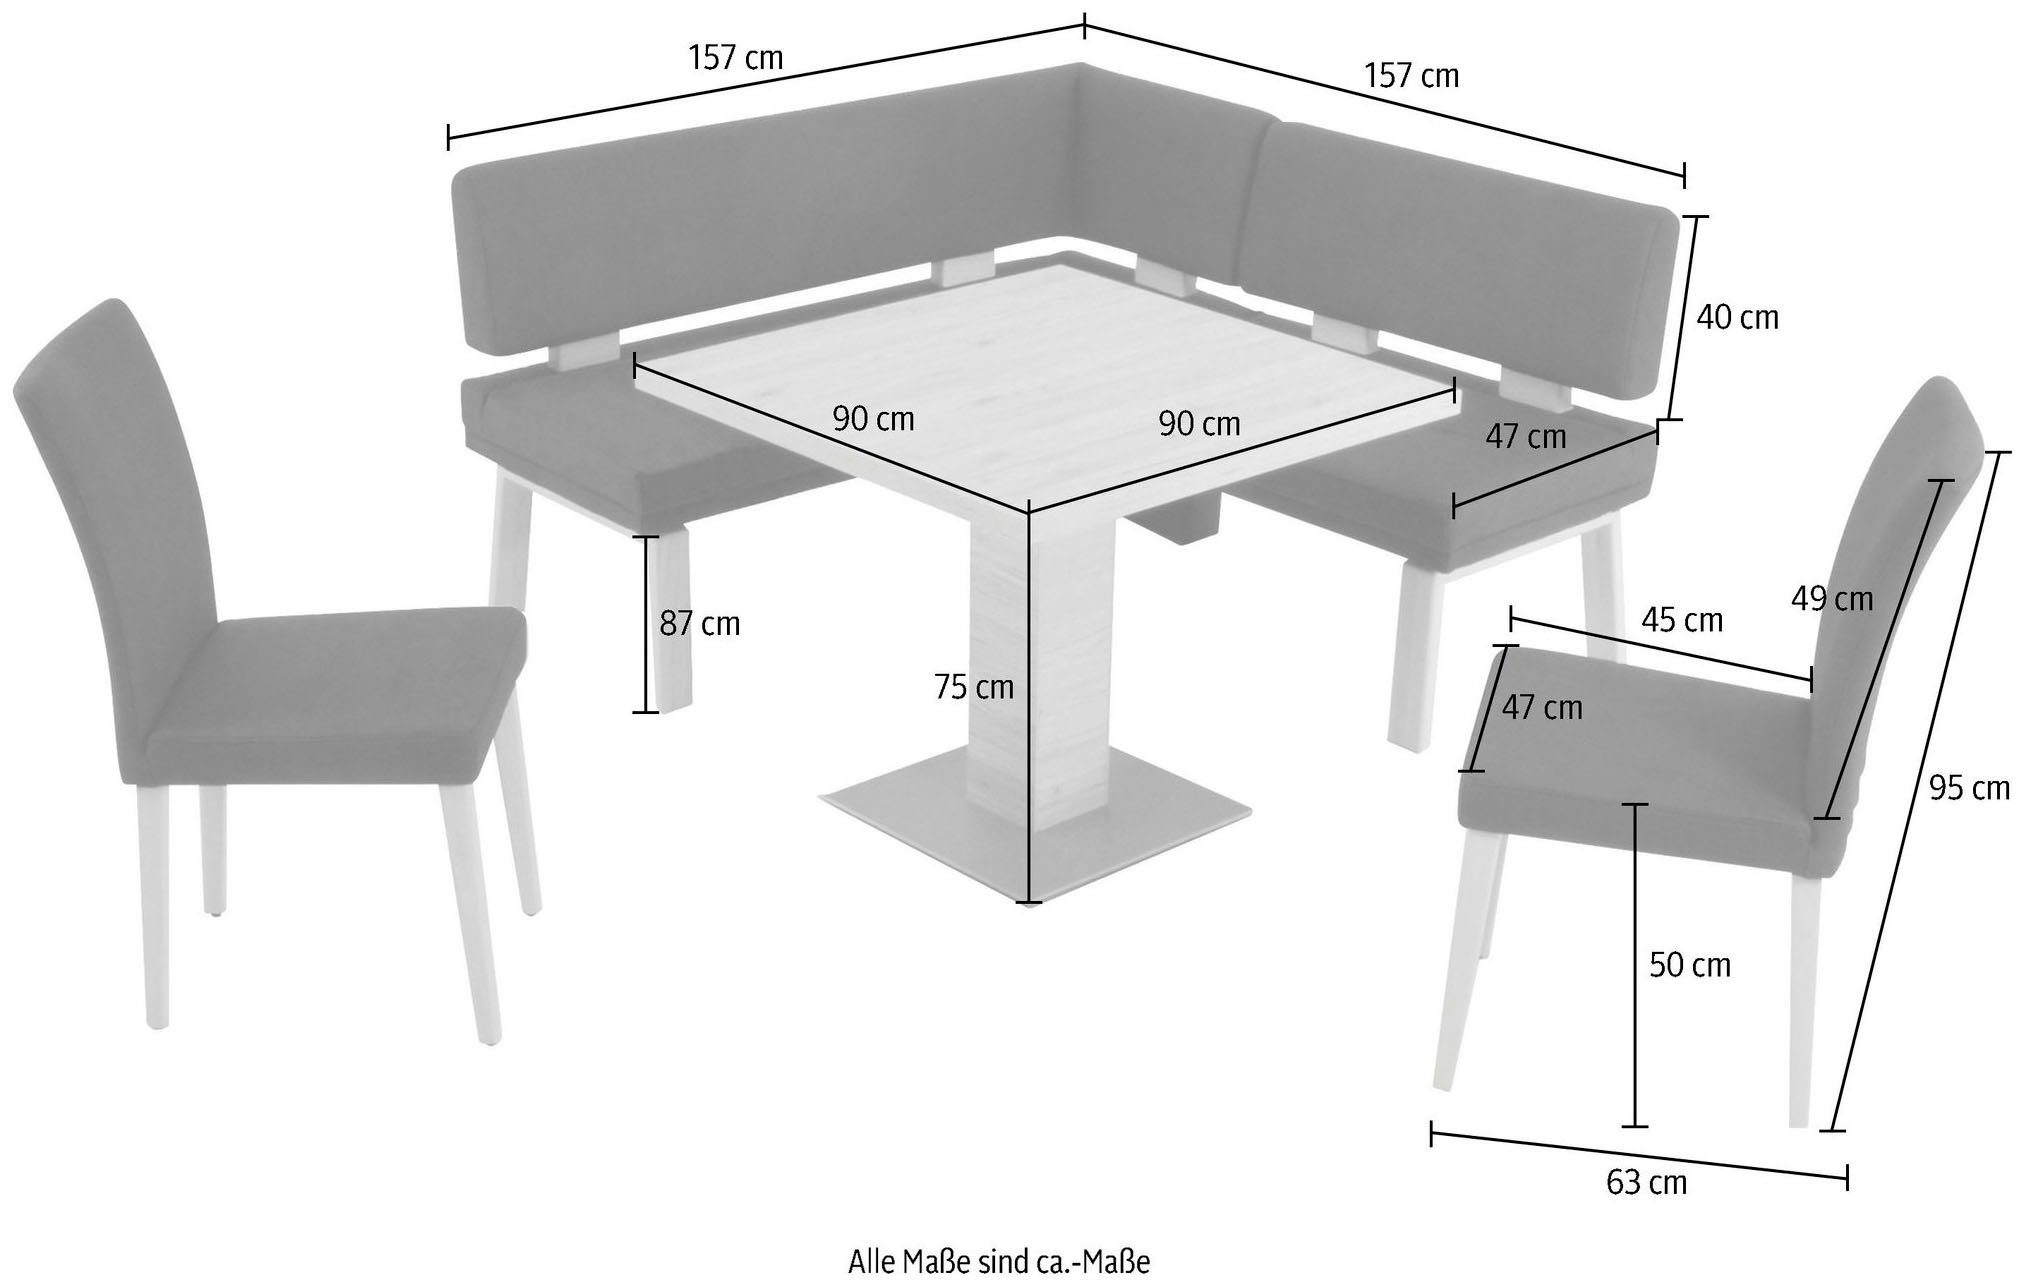 K+W Komfort & darkbrown 4-Fußholzstühle Tisch Eiche und Eckbankgruppe I, Santos 157cm, zwei Wohnen gleichschenklig 90x90cm